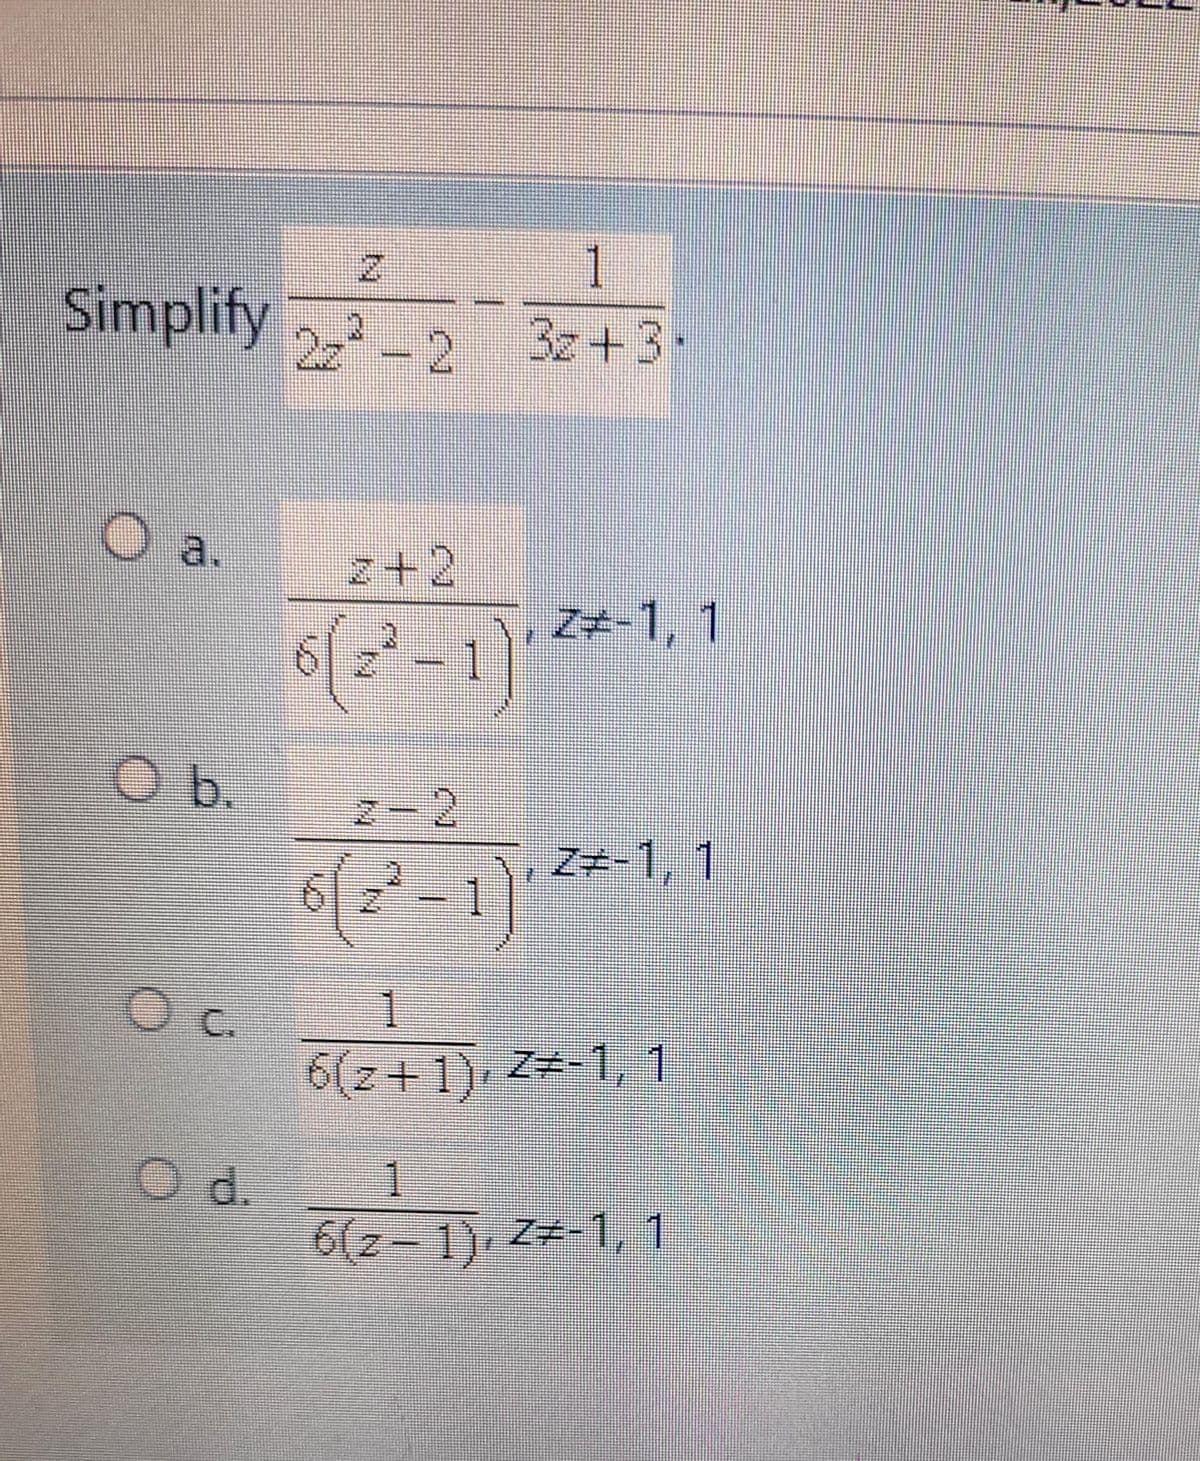 Simplify 2
Oa.
O b.
O c.
O d.
1
3z +3+
2z²-2
2+2
2²-1)'
2-2
6(2²-1)
1
6(2+1), 2-1, 1
1
6(2-1), Z-1, 1
DO
Z-1, 1
Z-1, 1